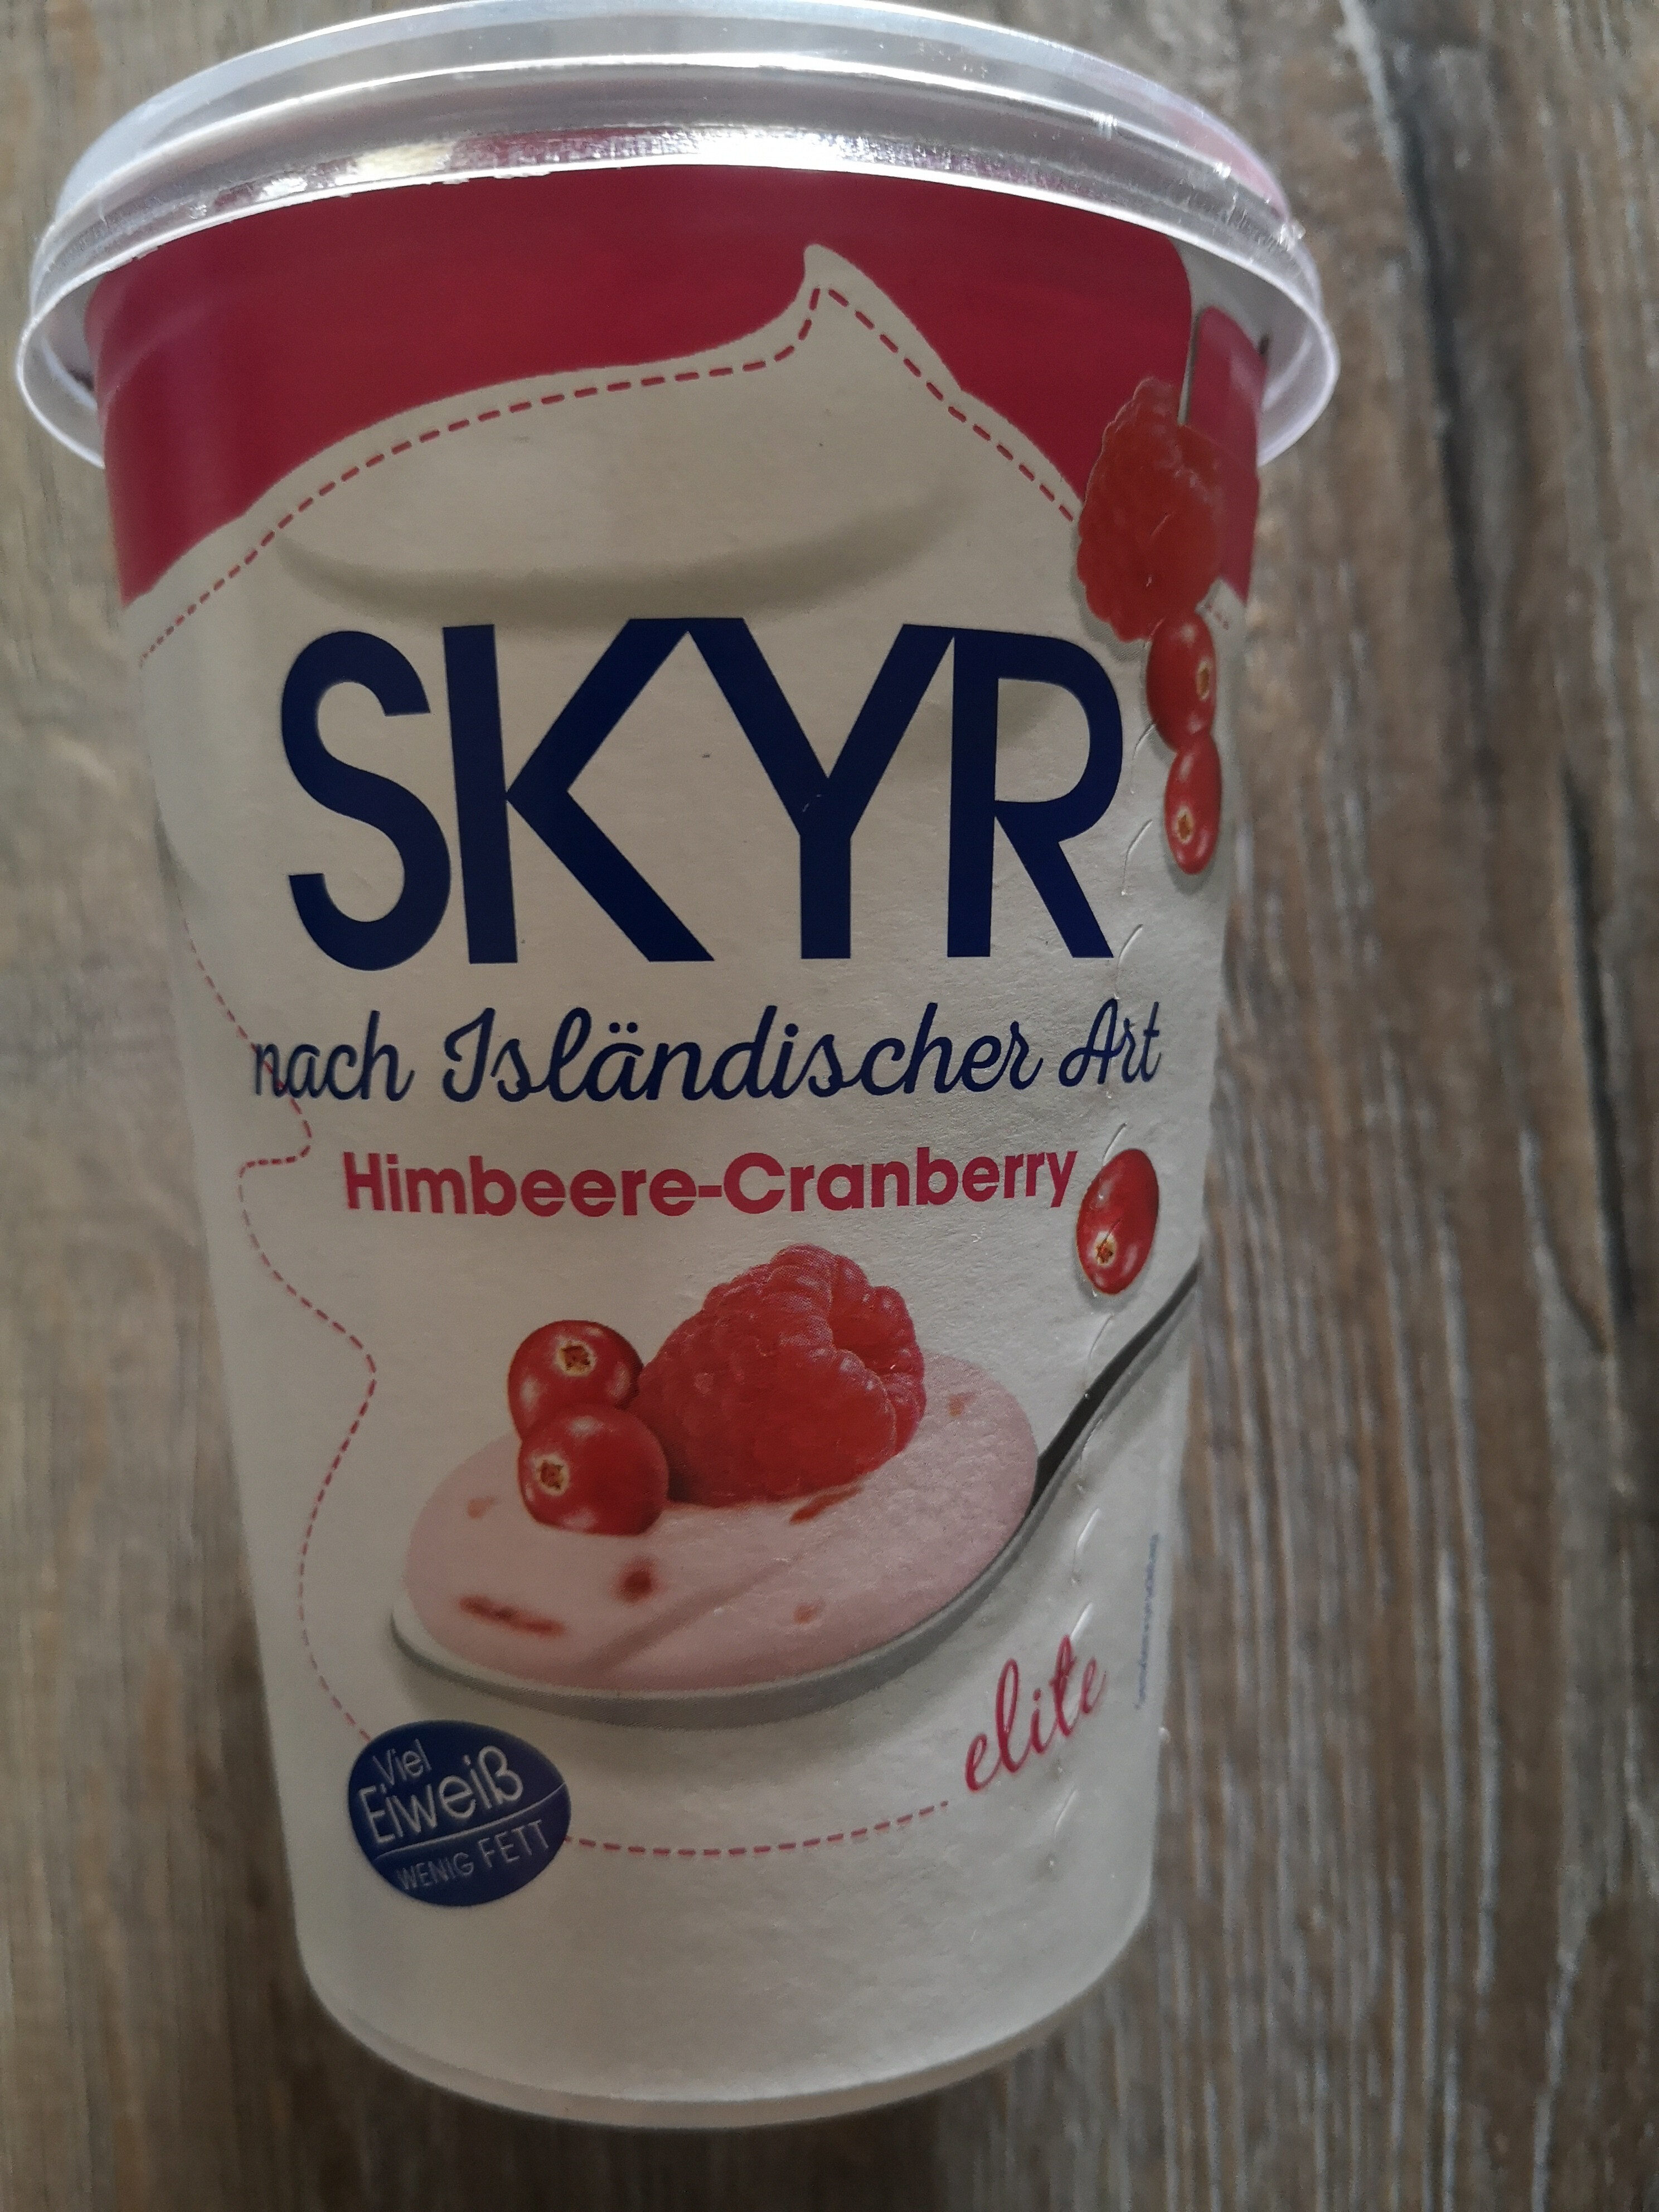 Skyr isländische Art Himbeere - Cranberry - Product - de